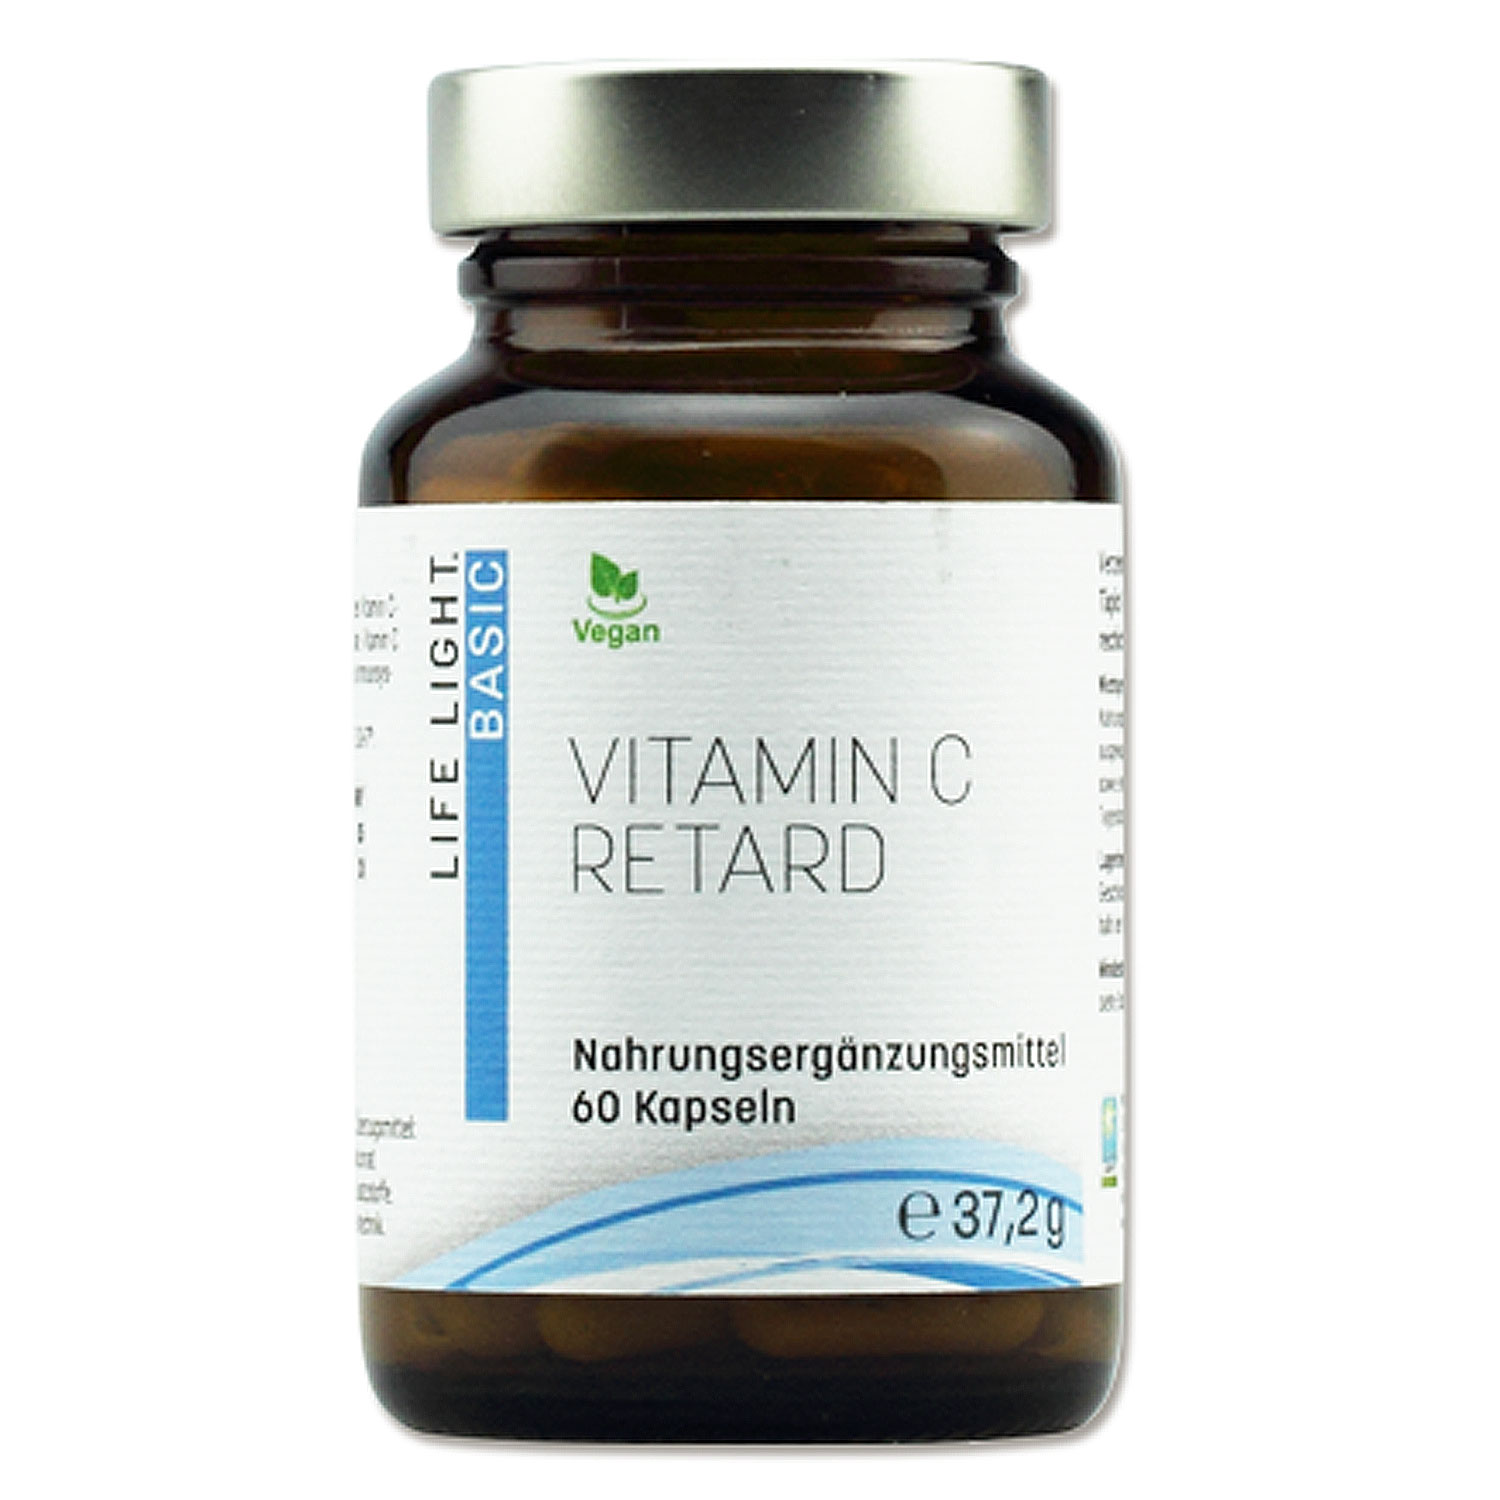 Vitamin C retard von Life Light - 60 Kapseln